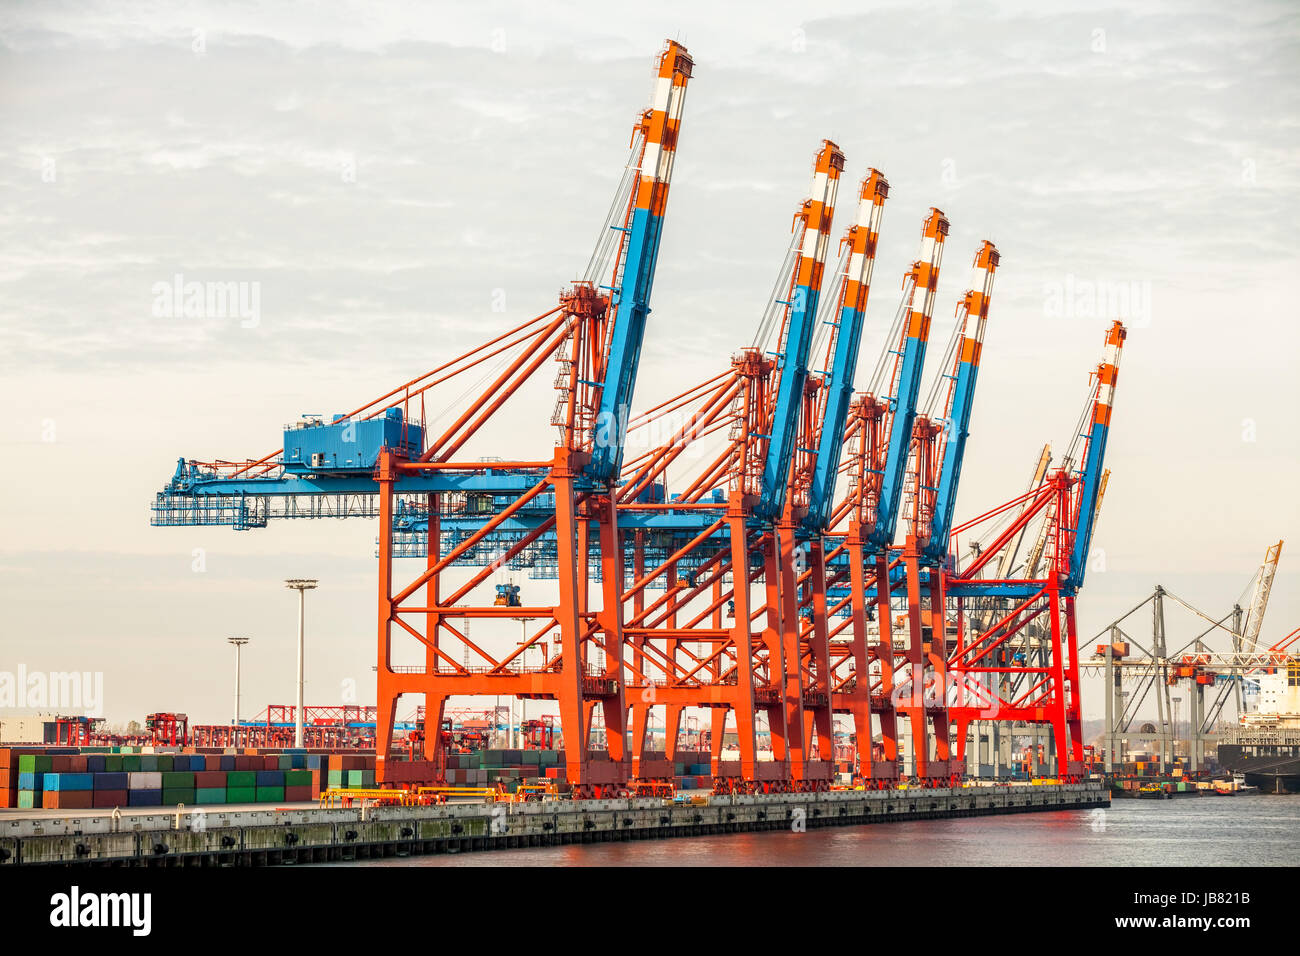 Dans kontainerkran beladung Hafen Hamburg an der elbe meer handel transport fracht Banque D'Images